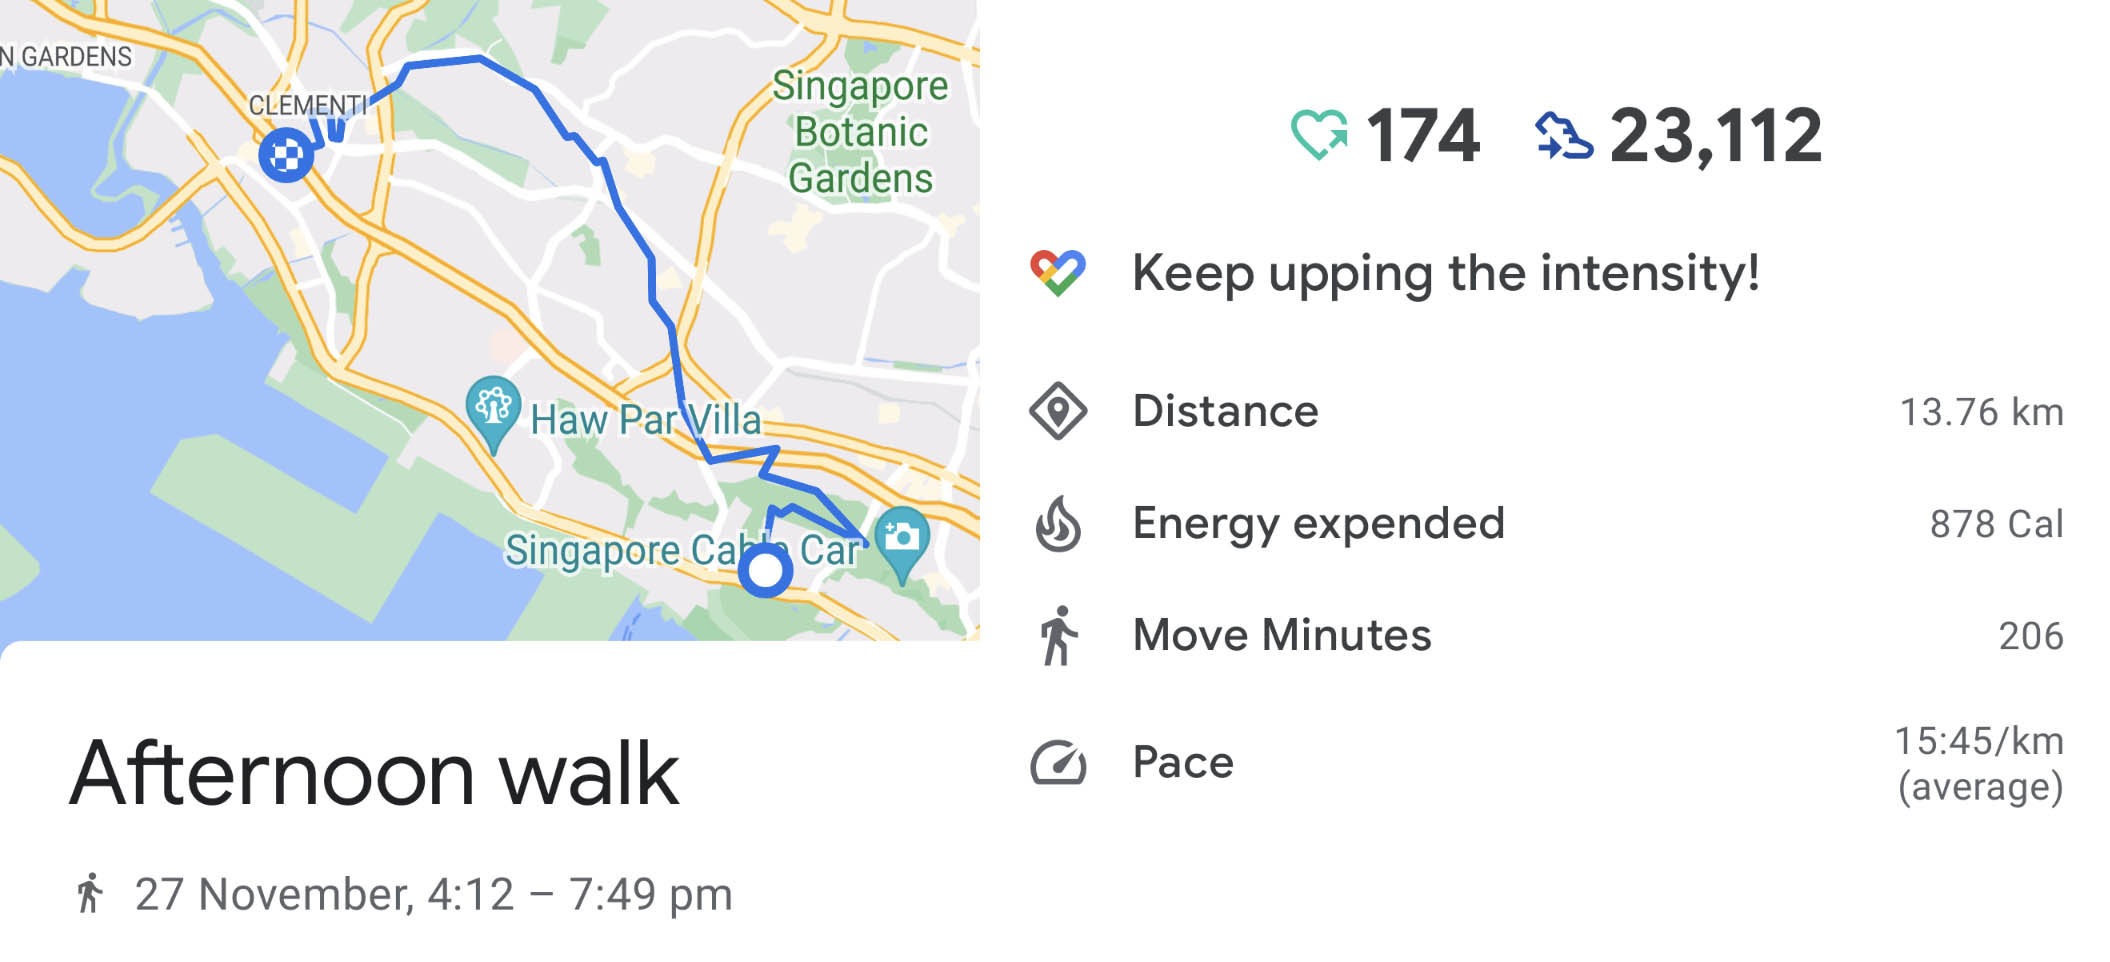 Taking a long walk